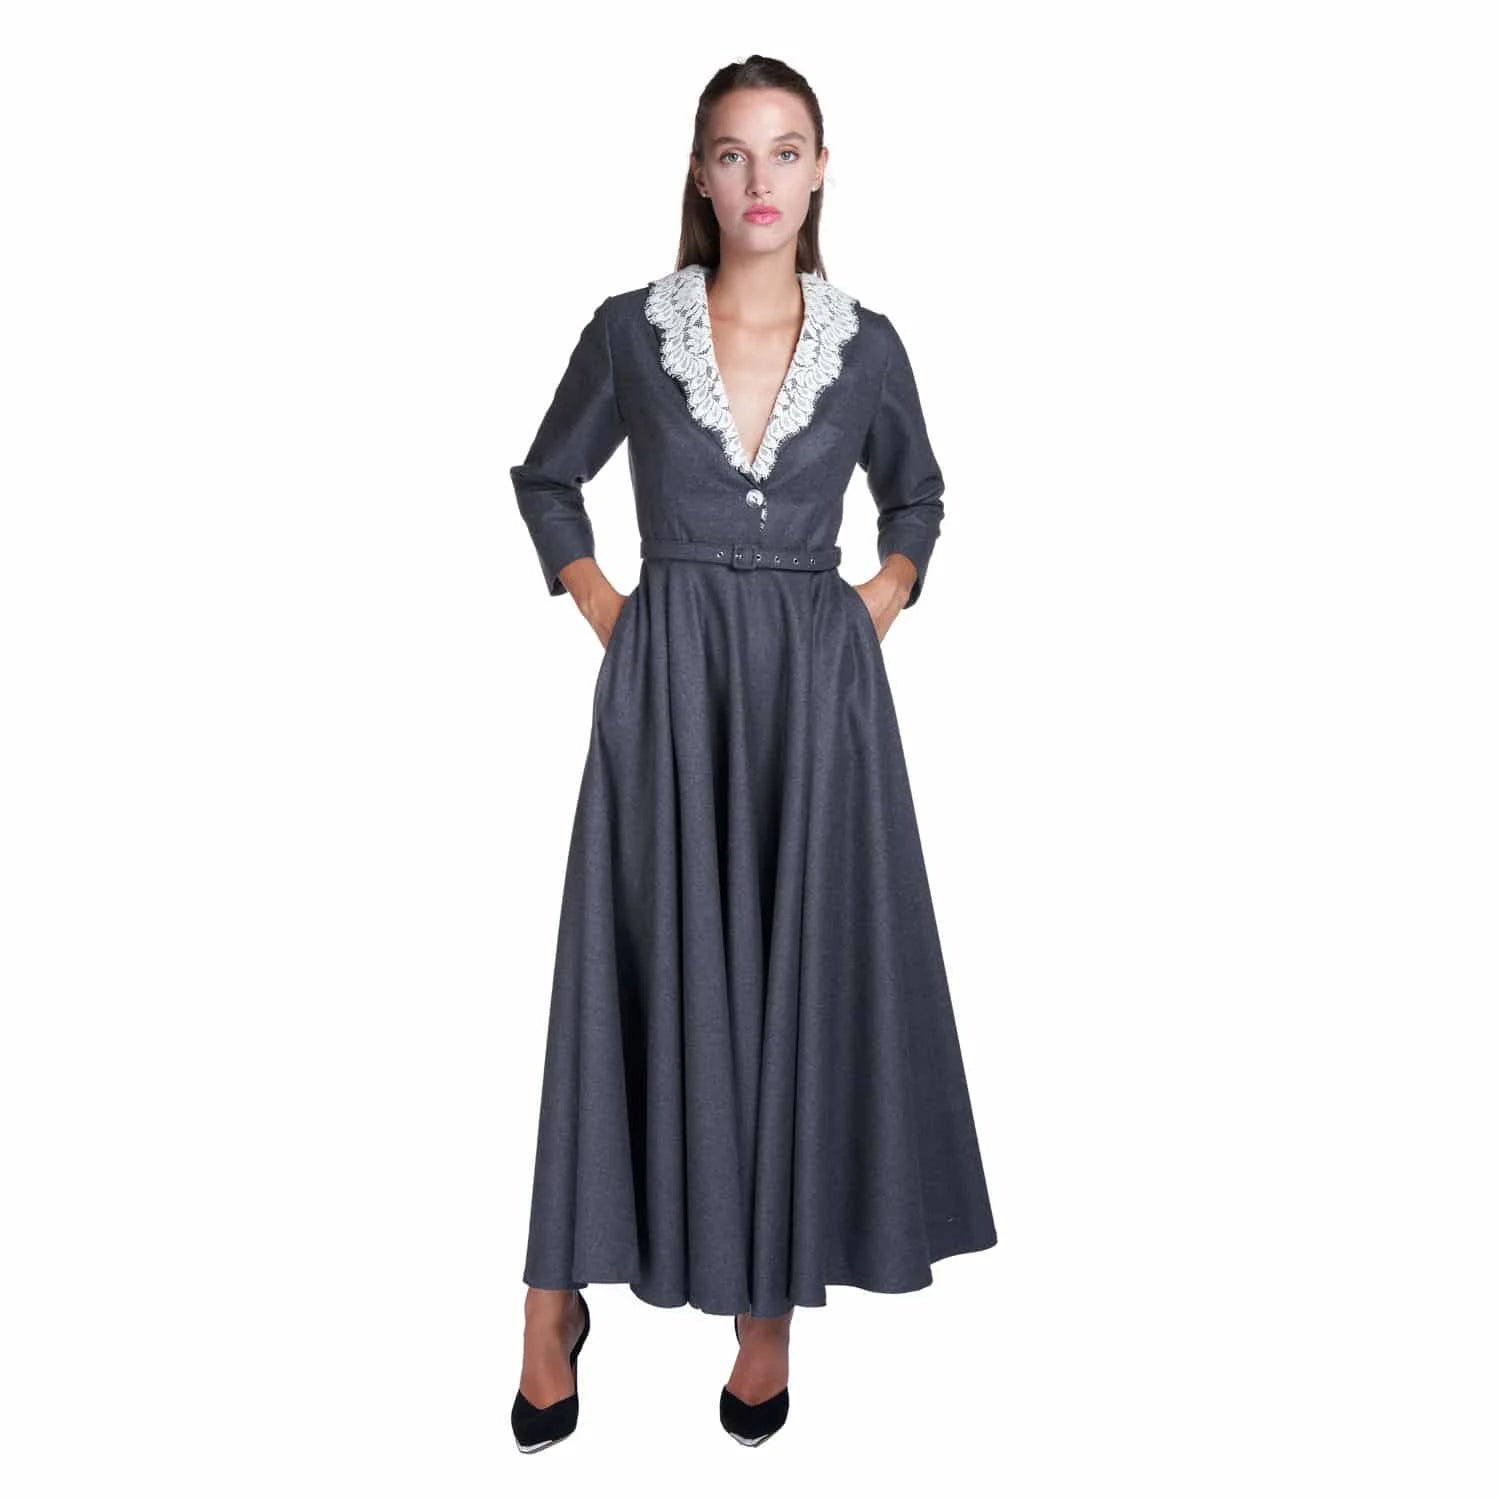 Formal wool suitdress - Dress